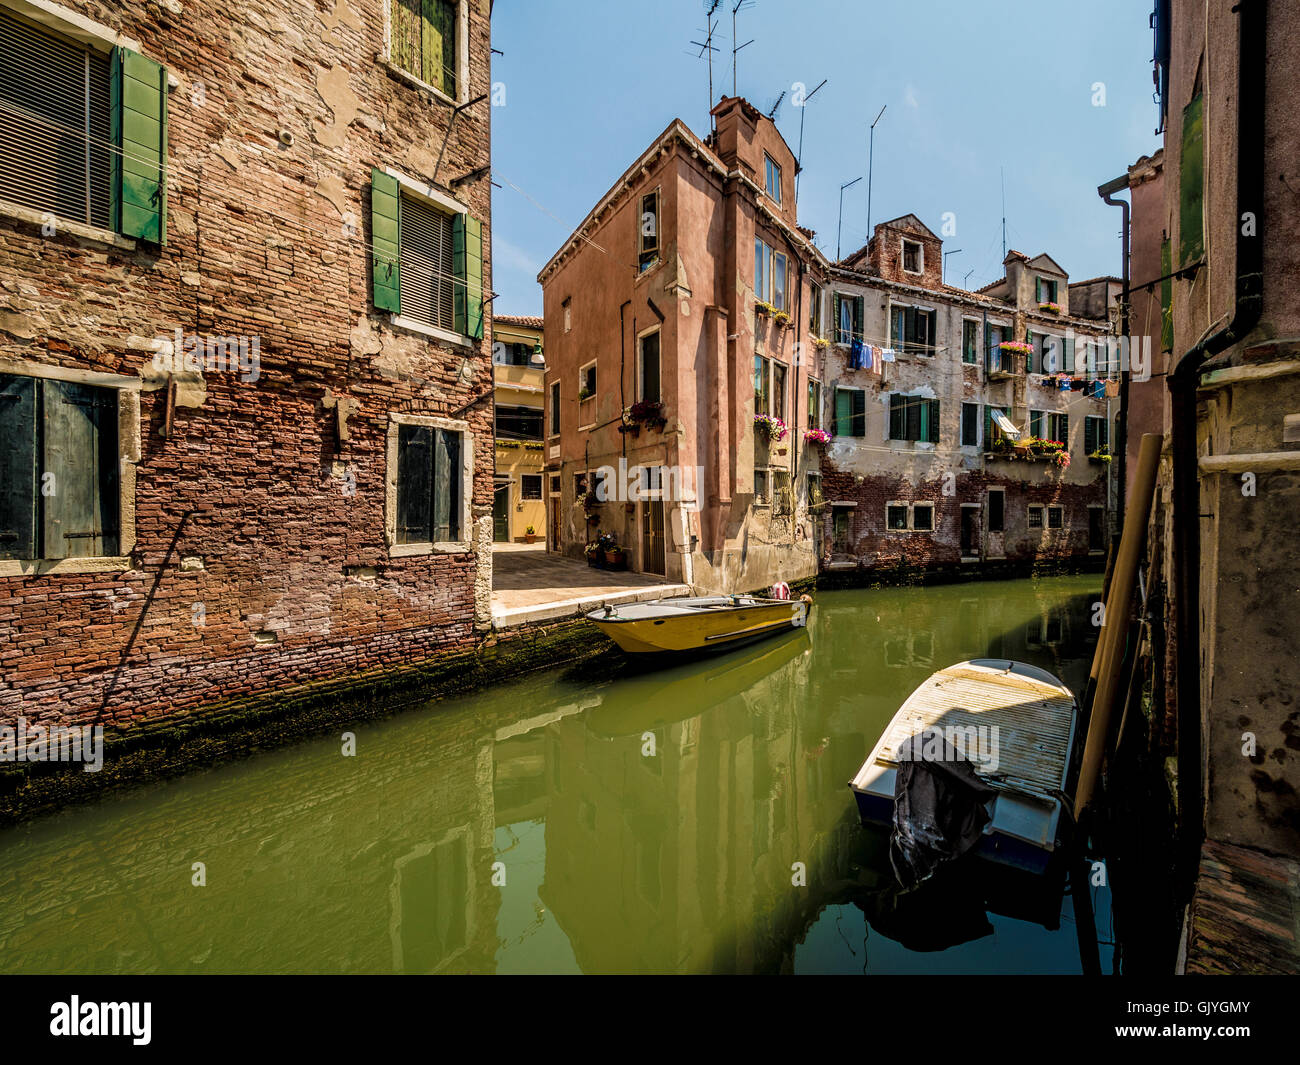 Barche ormeggiate su uno stretto canale con edifici tradizionali su entrambi i lati. Venezia, Italia. Foto Stock